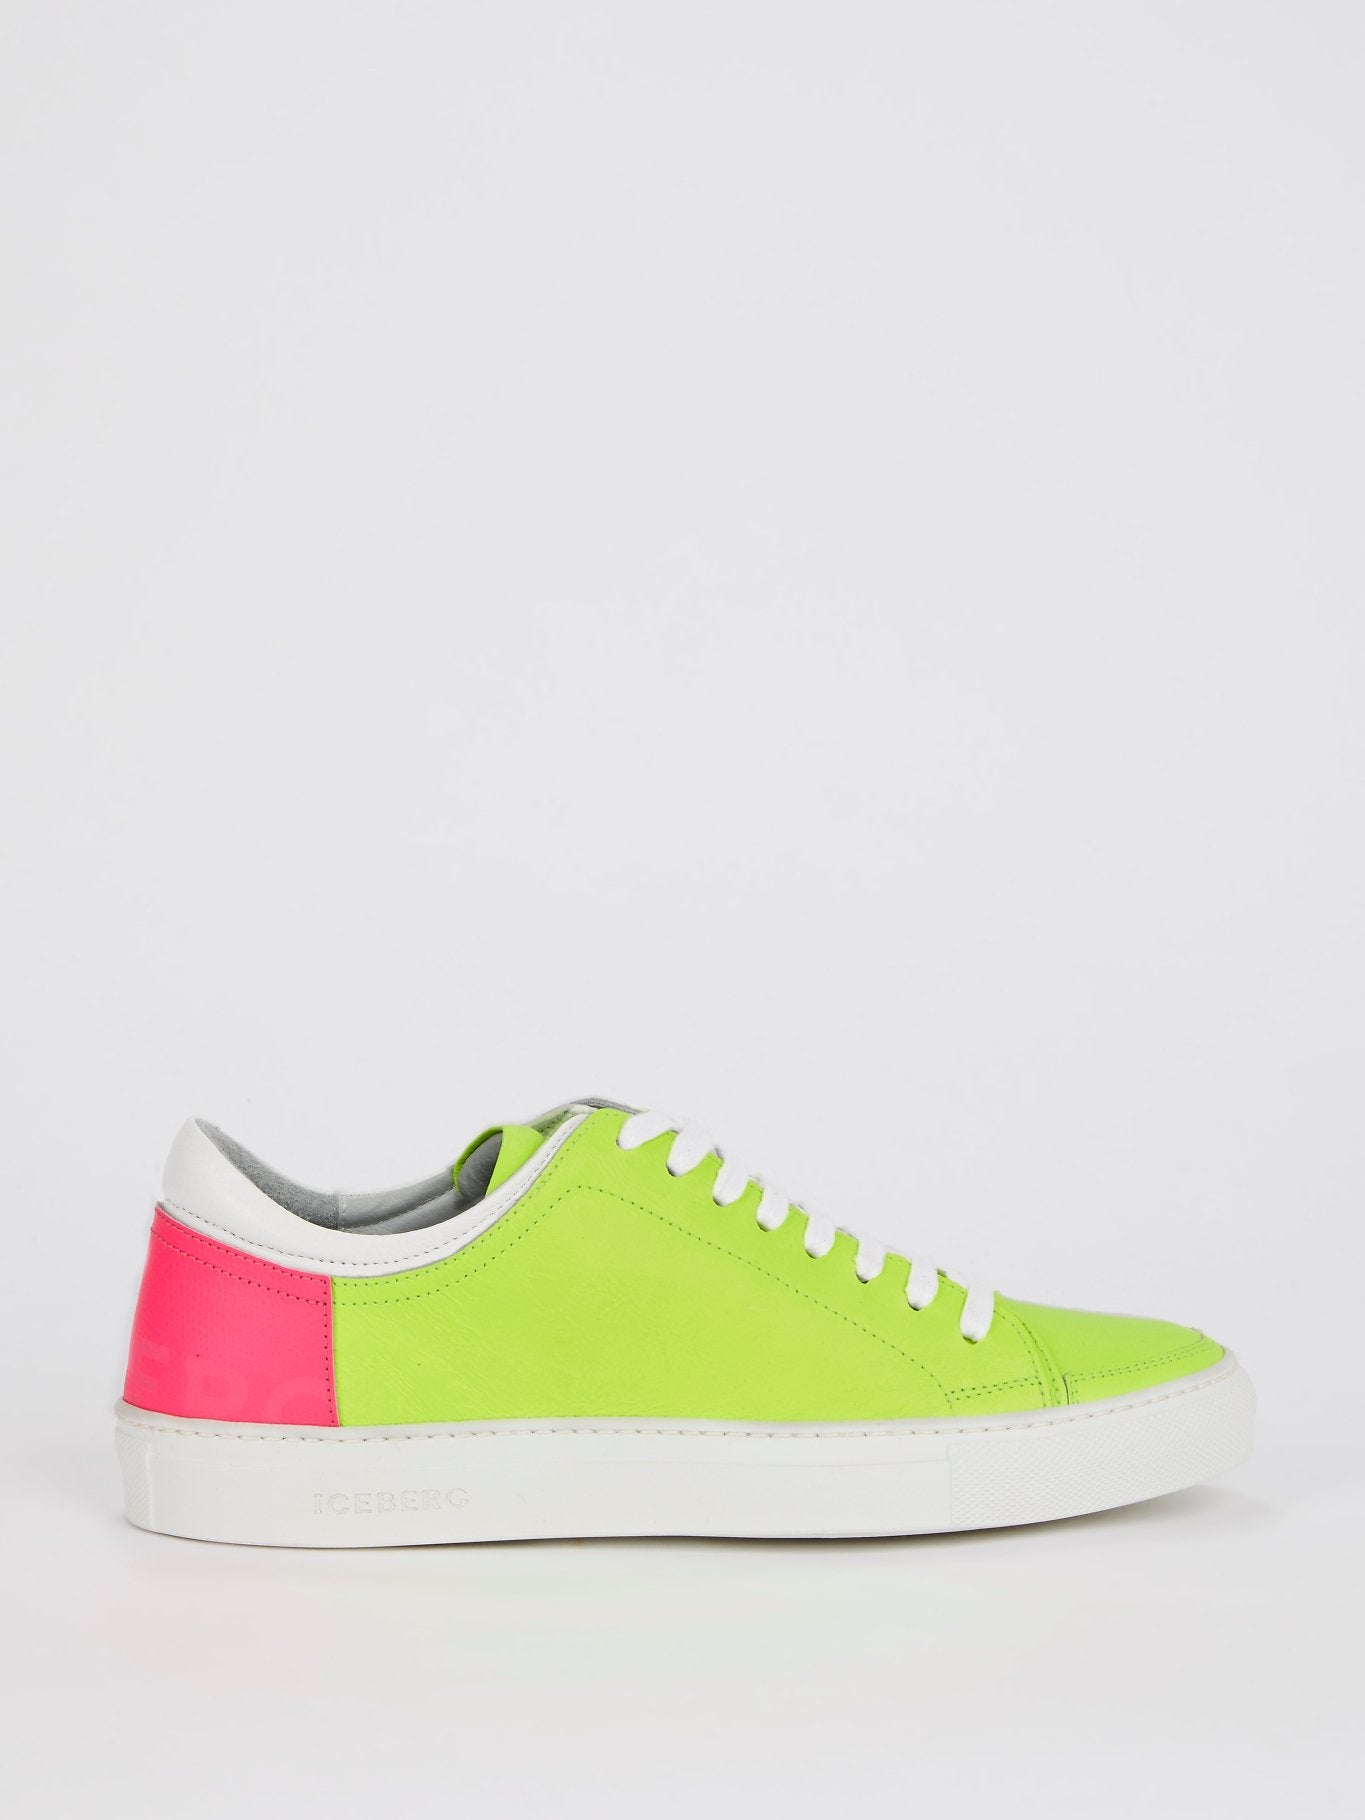 Neon Green Low Top Sneakers